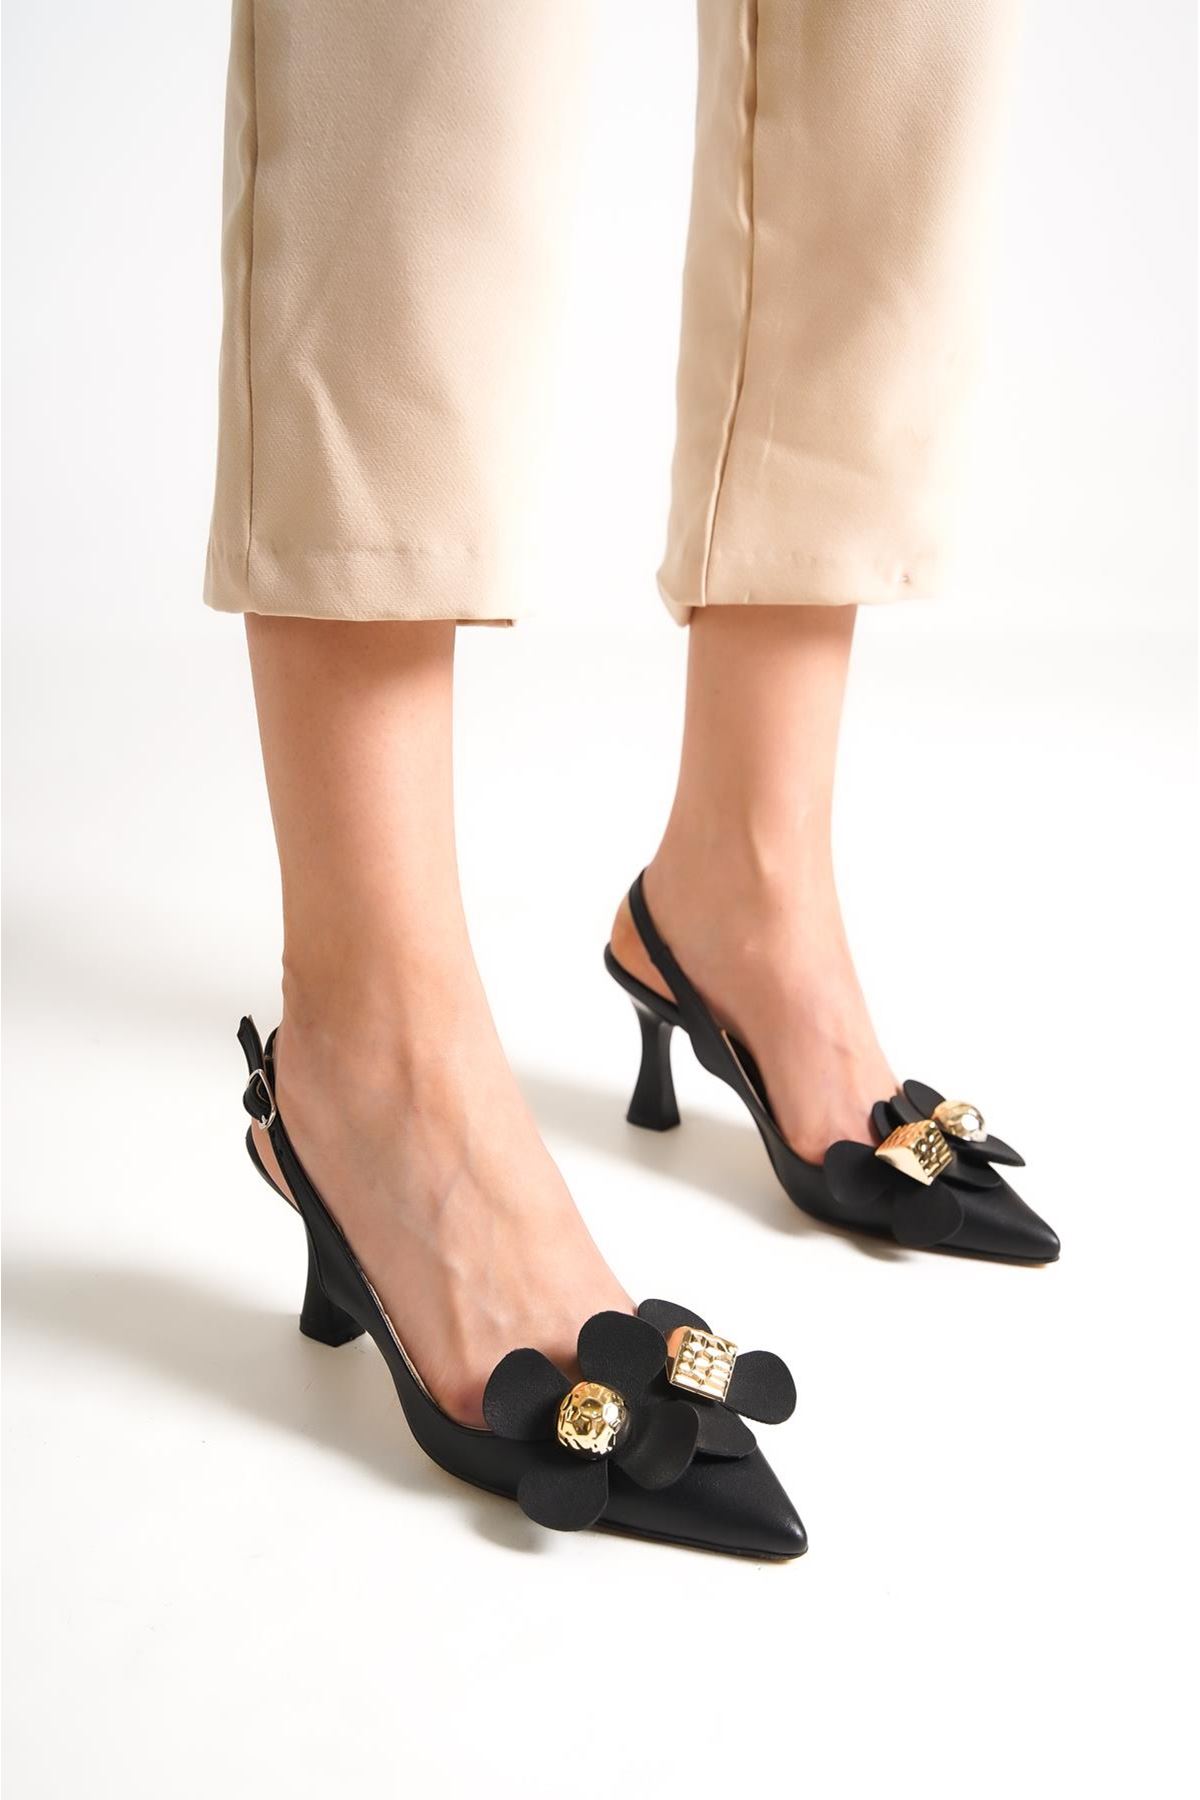 Kadın Stiletto Kısa Topuklu Ayakkabı Tweety Siyah Çiçekli